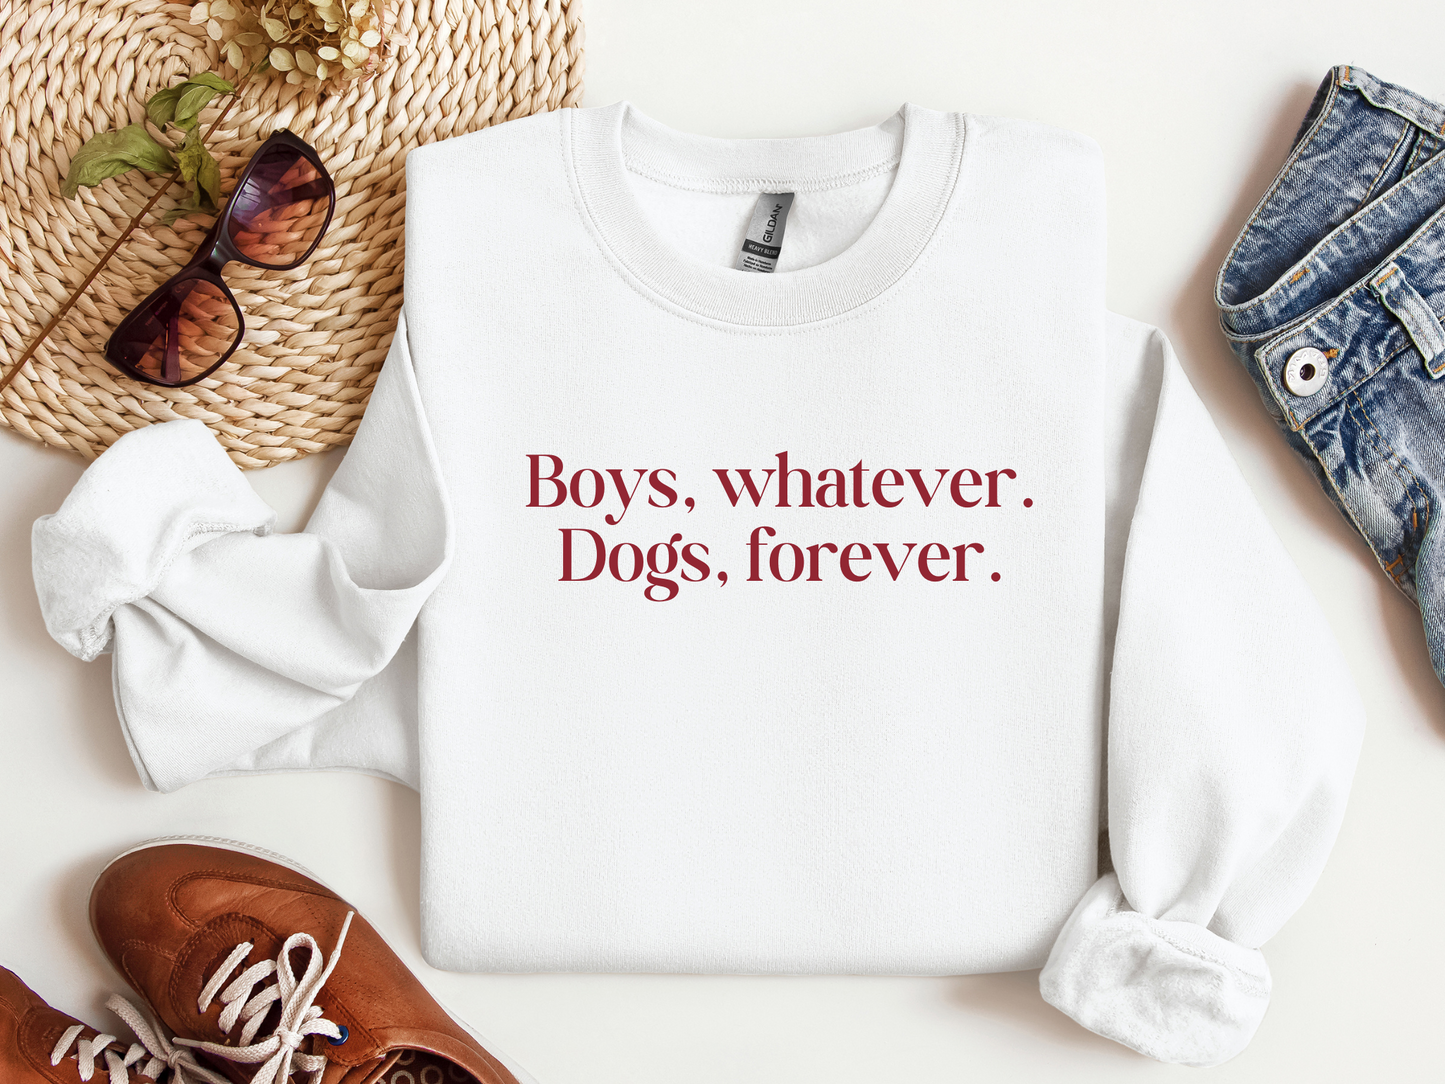 Boys Whatever Dogs Forever Sweatshirt, White